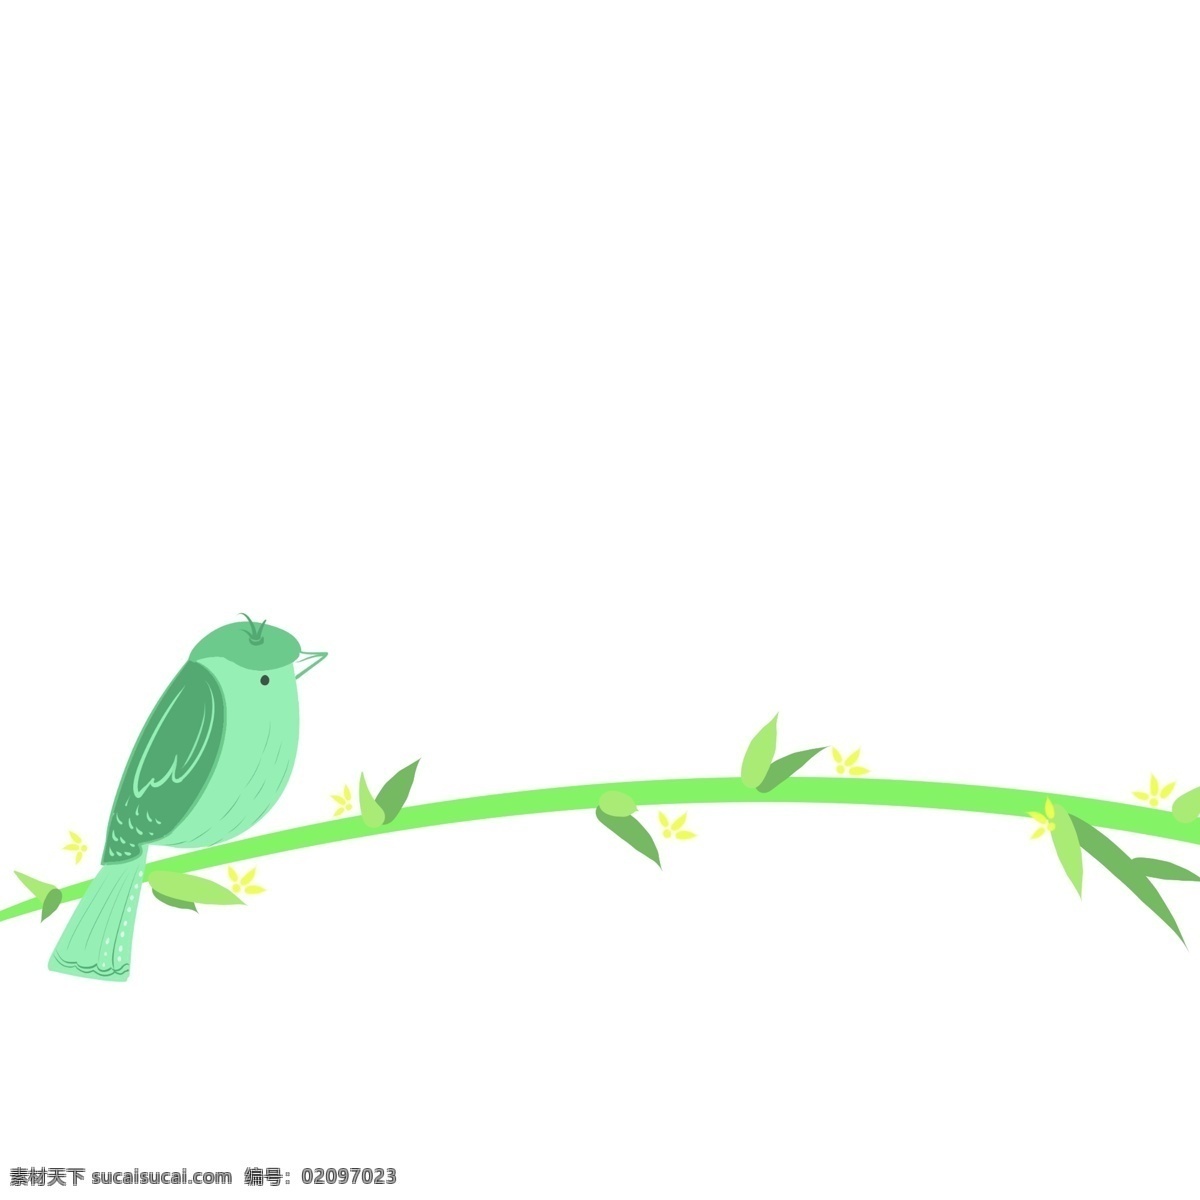 分割线 鸟 卡通 插画 蓝色的小鸟 卡通插画 分割线插画 简易分割线 装饰插画 小鸟 动物 宠物